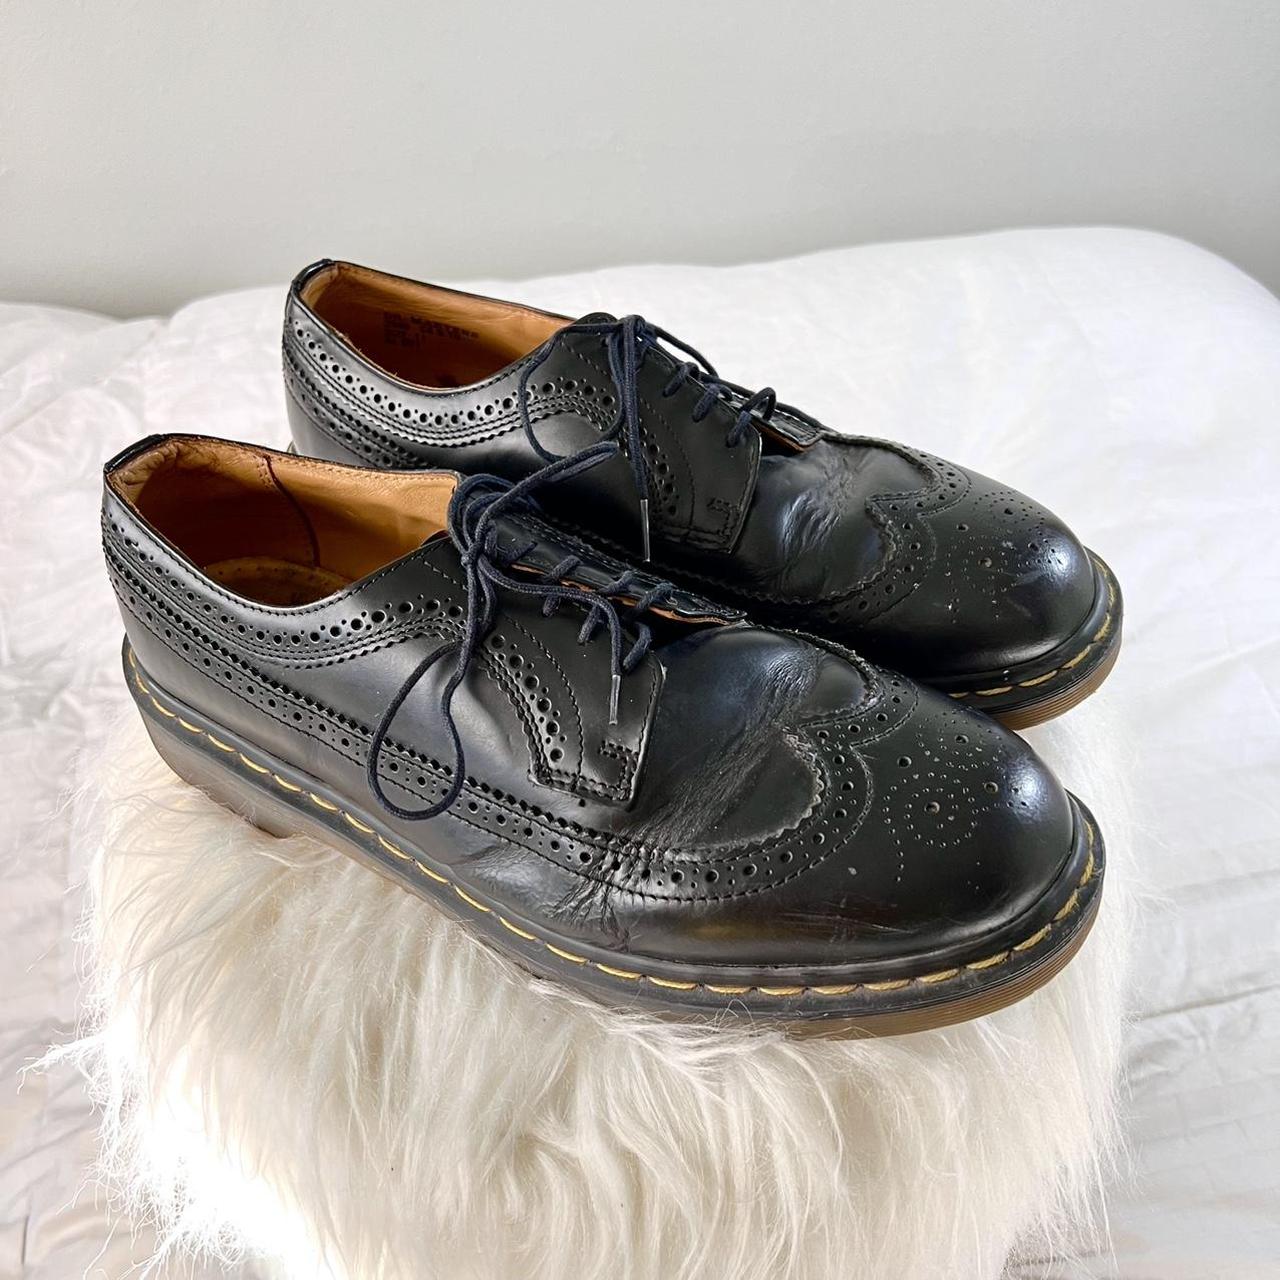 Doc Marten black lace up shoes. 3989 YELLOW STITCH... - Depop